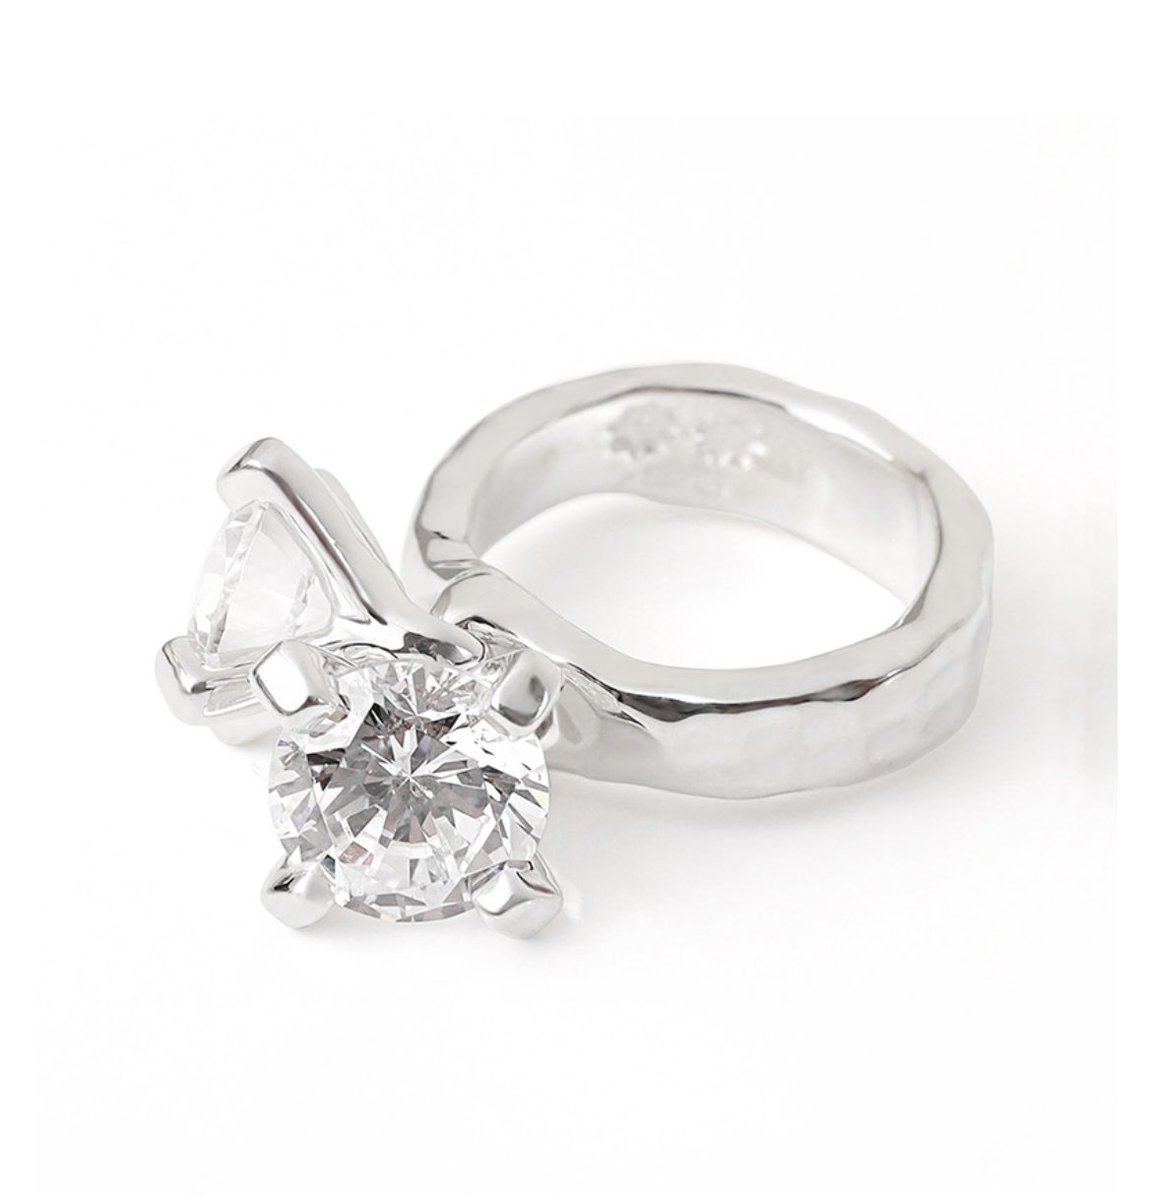 「ごんぶと指コンプレックスで指輪苦手だけど今欲しいなって指輪があって…でもデザイン」|田中スーザン美ふゆのイラスト